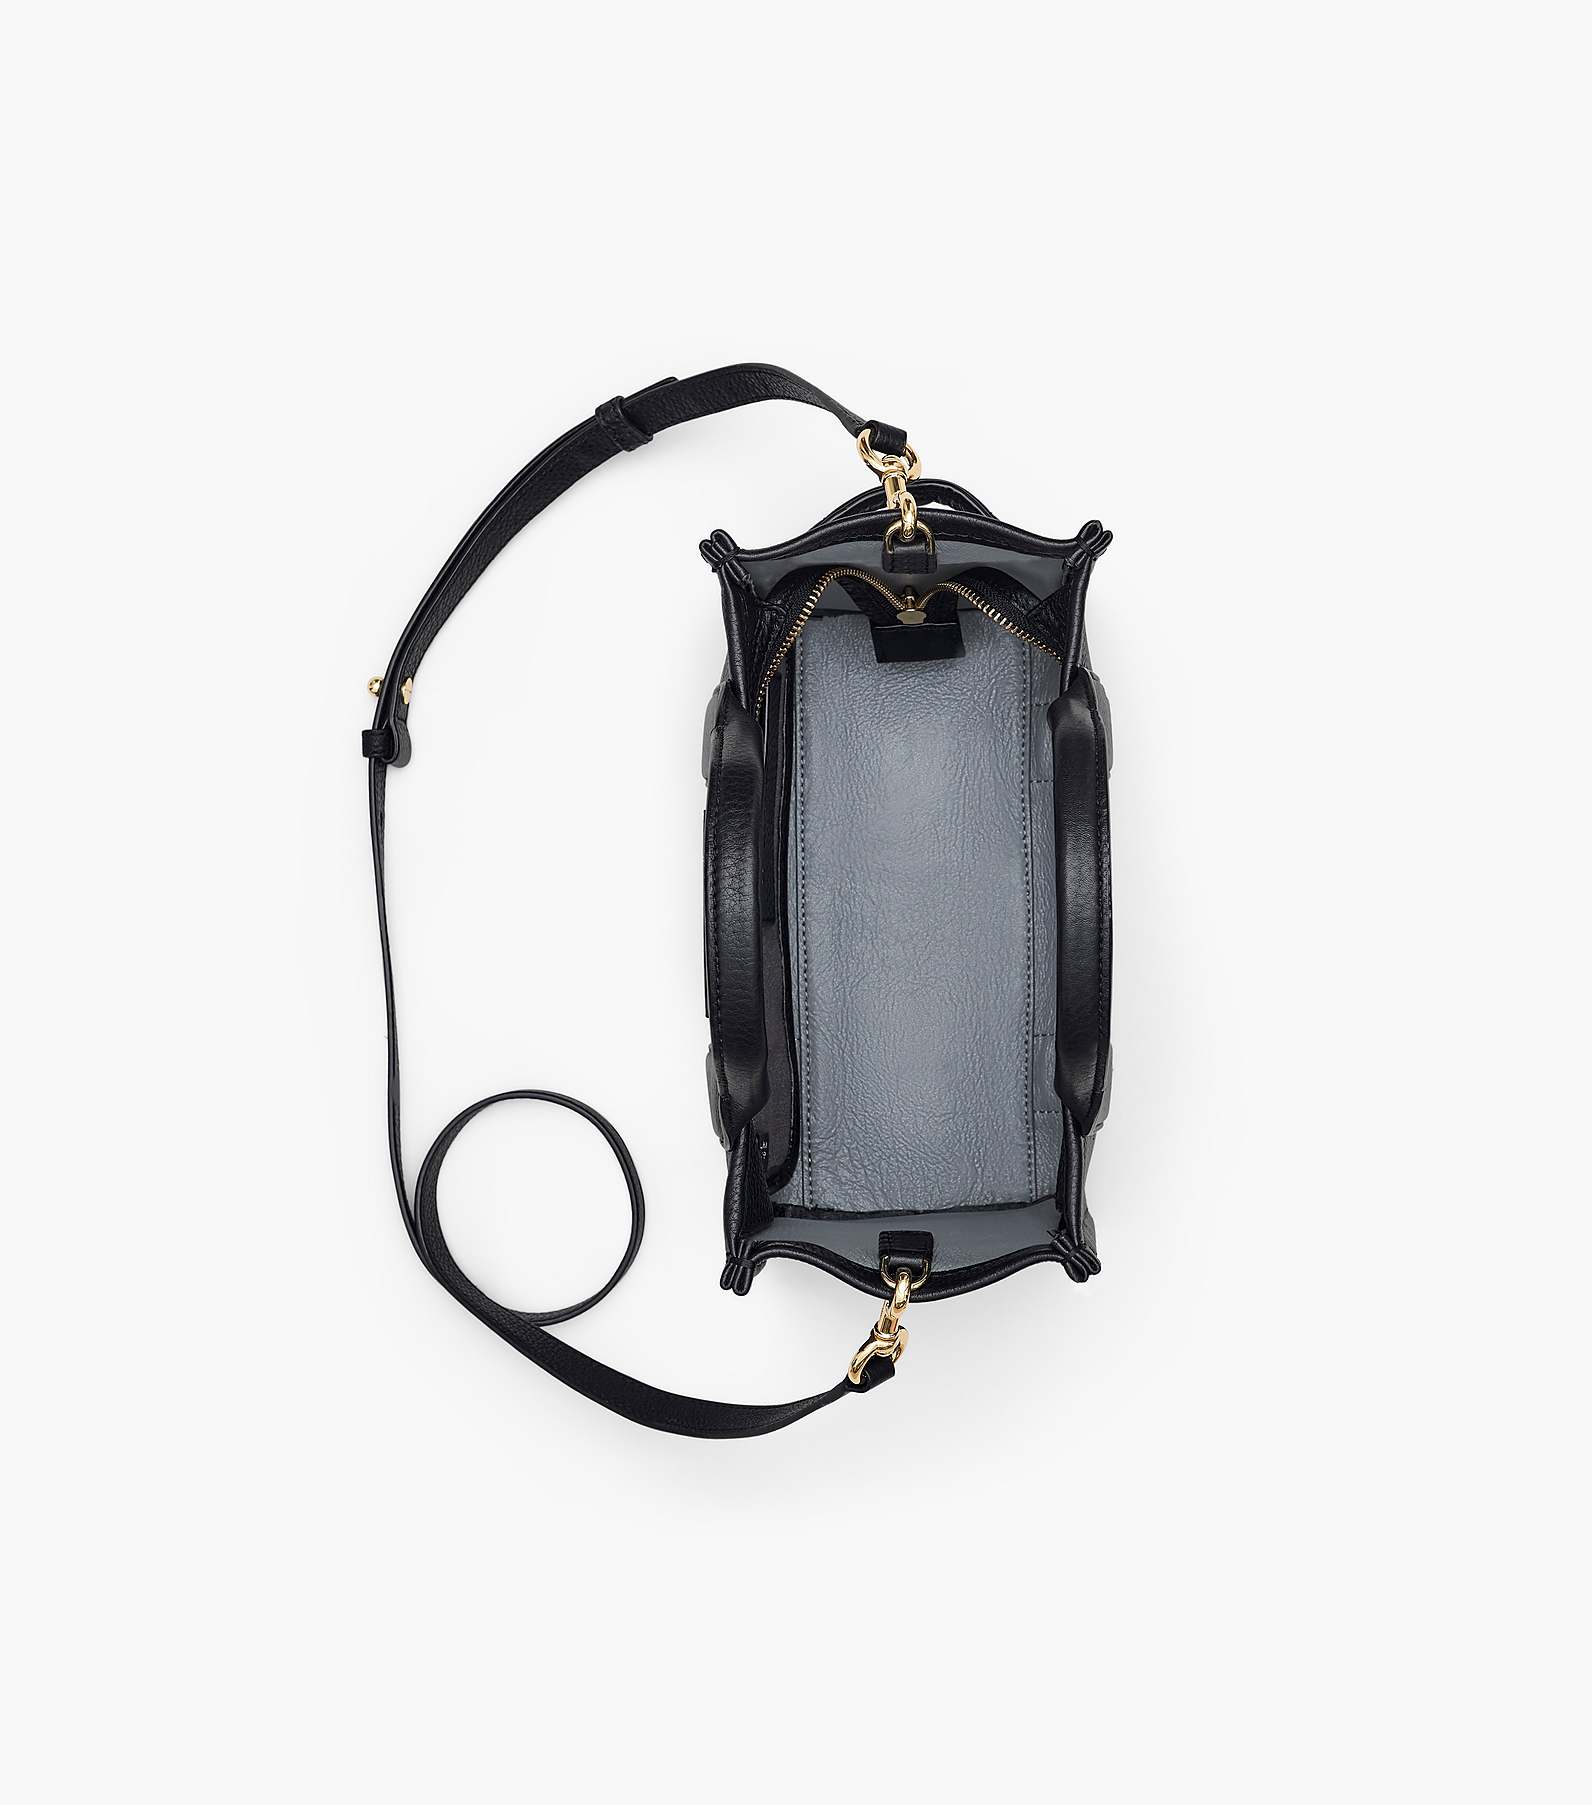 Rimpels lip Factuur The Leather Mini Tote Bag | Marc Jacobs | Official Site